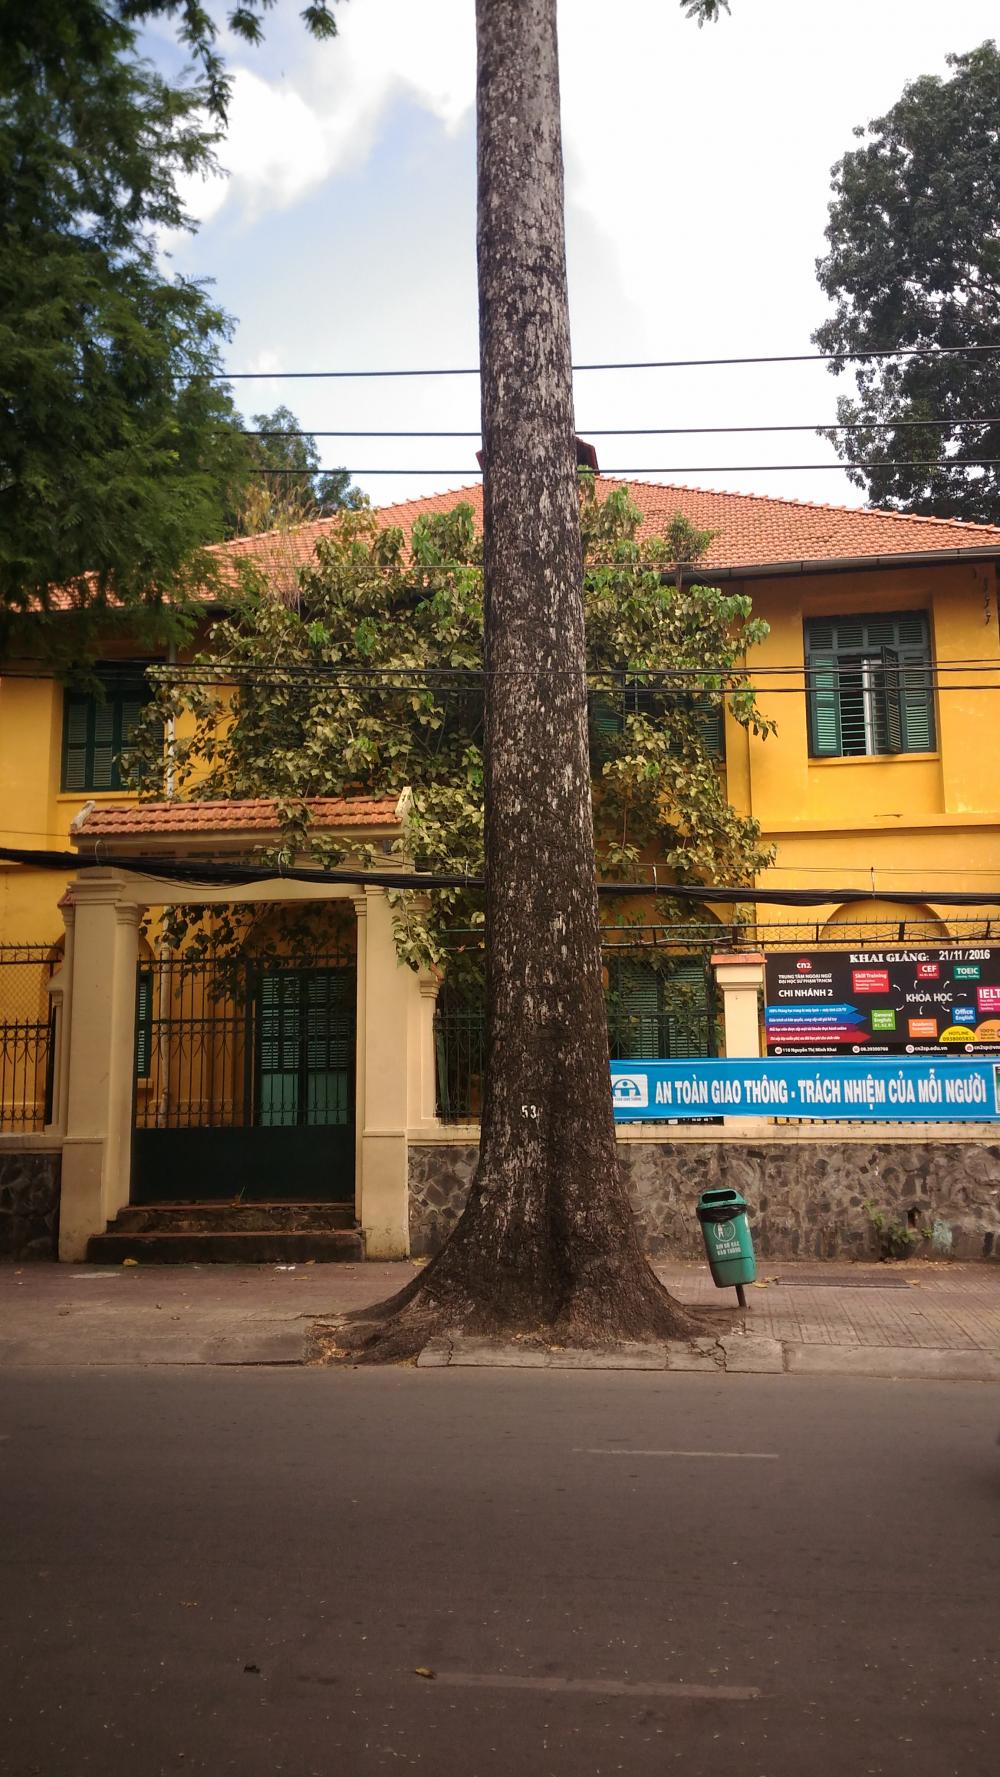 Bán gấp nhà Q1, mặt tiền đường Nguyễn Thái Bình, Q. 1